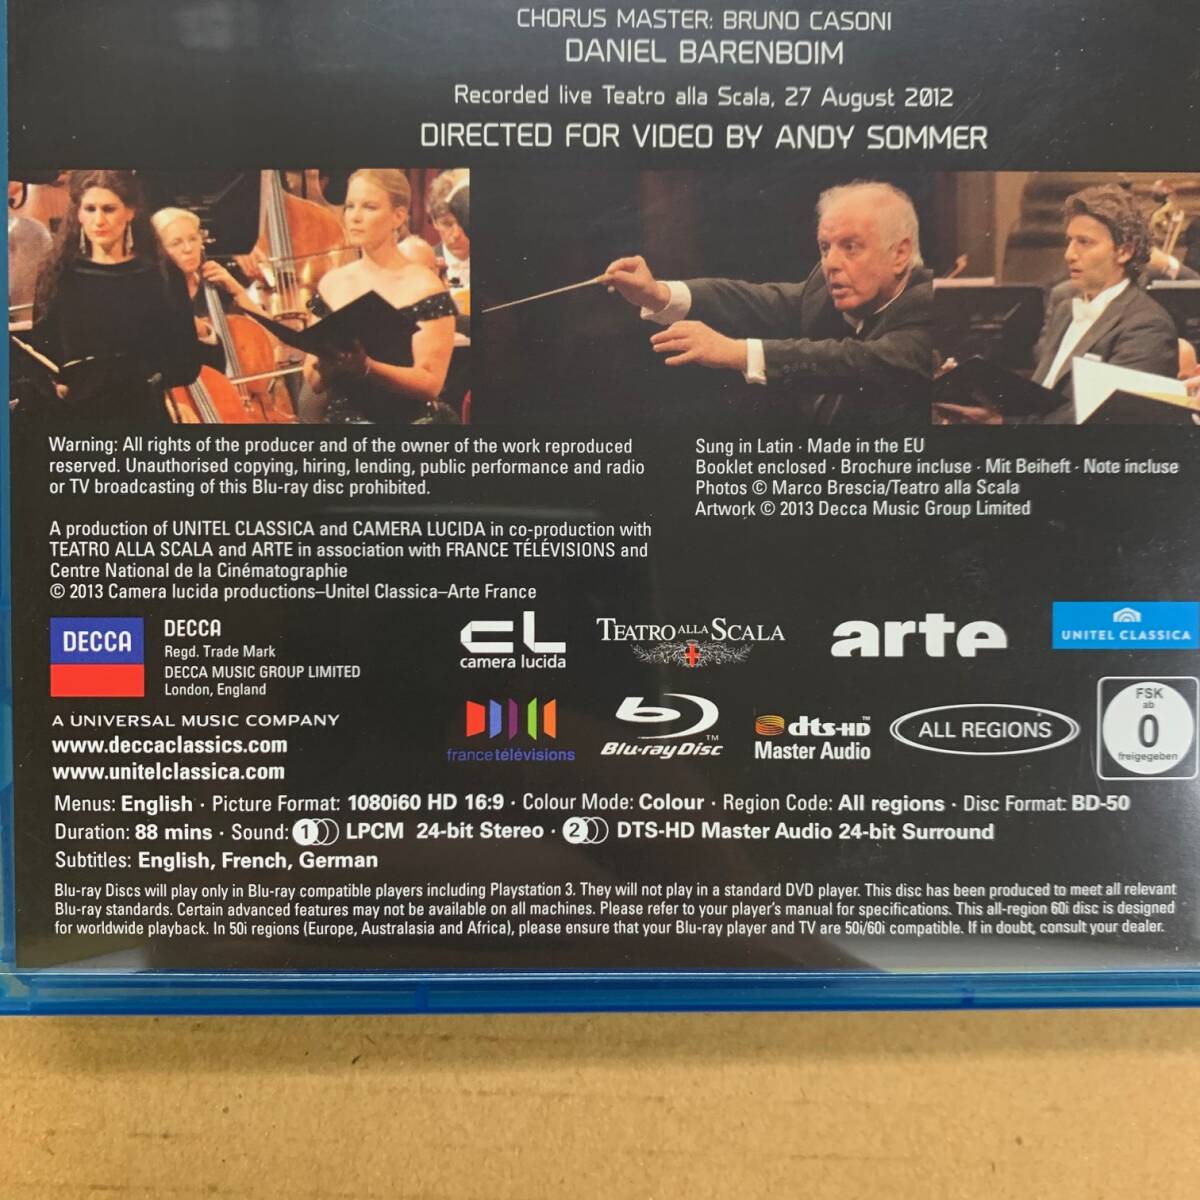 [Blu-ray] ヴェルディ - レクイエム [0044007438084] 輸入盤/バレンボイム/Verdi/Requiem/スカラ座/クラシック_画像5